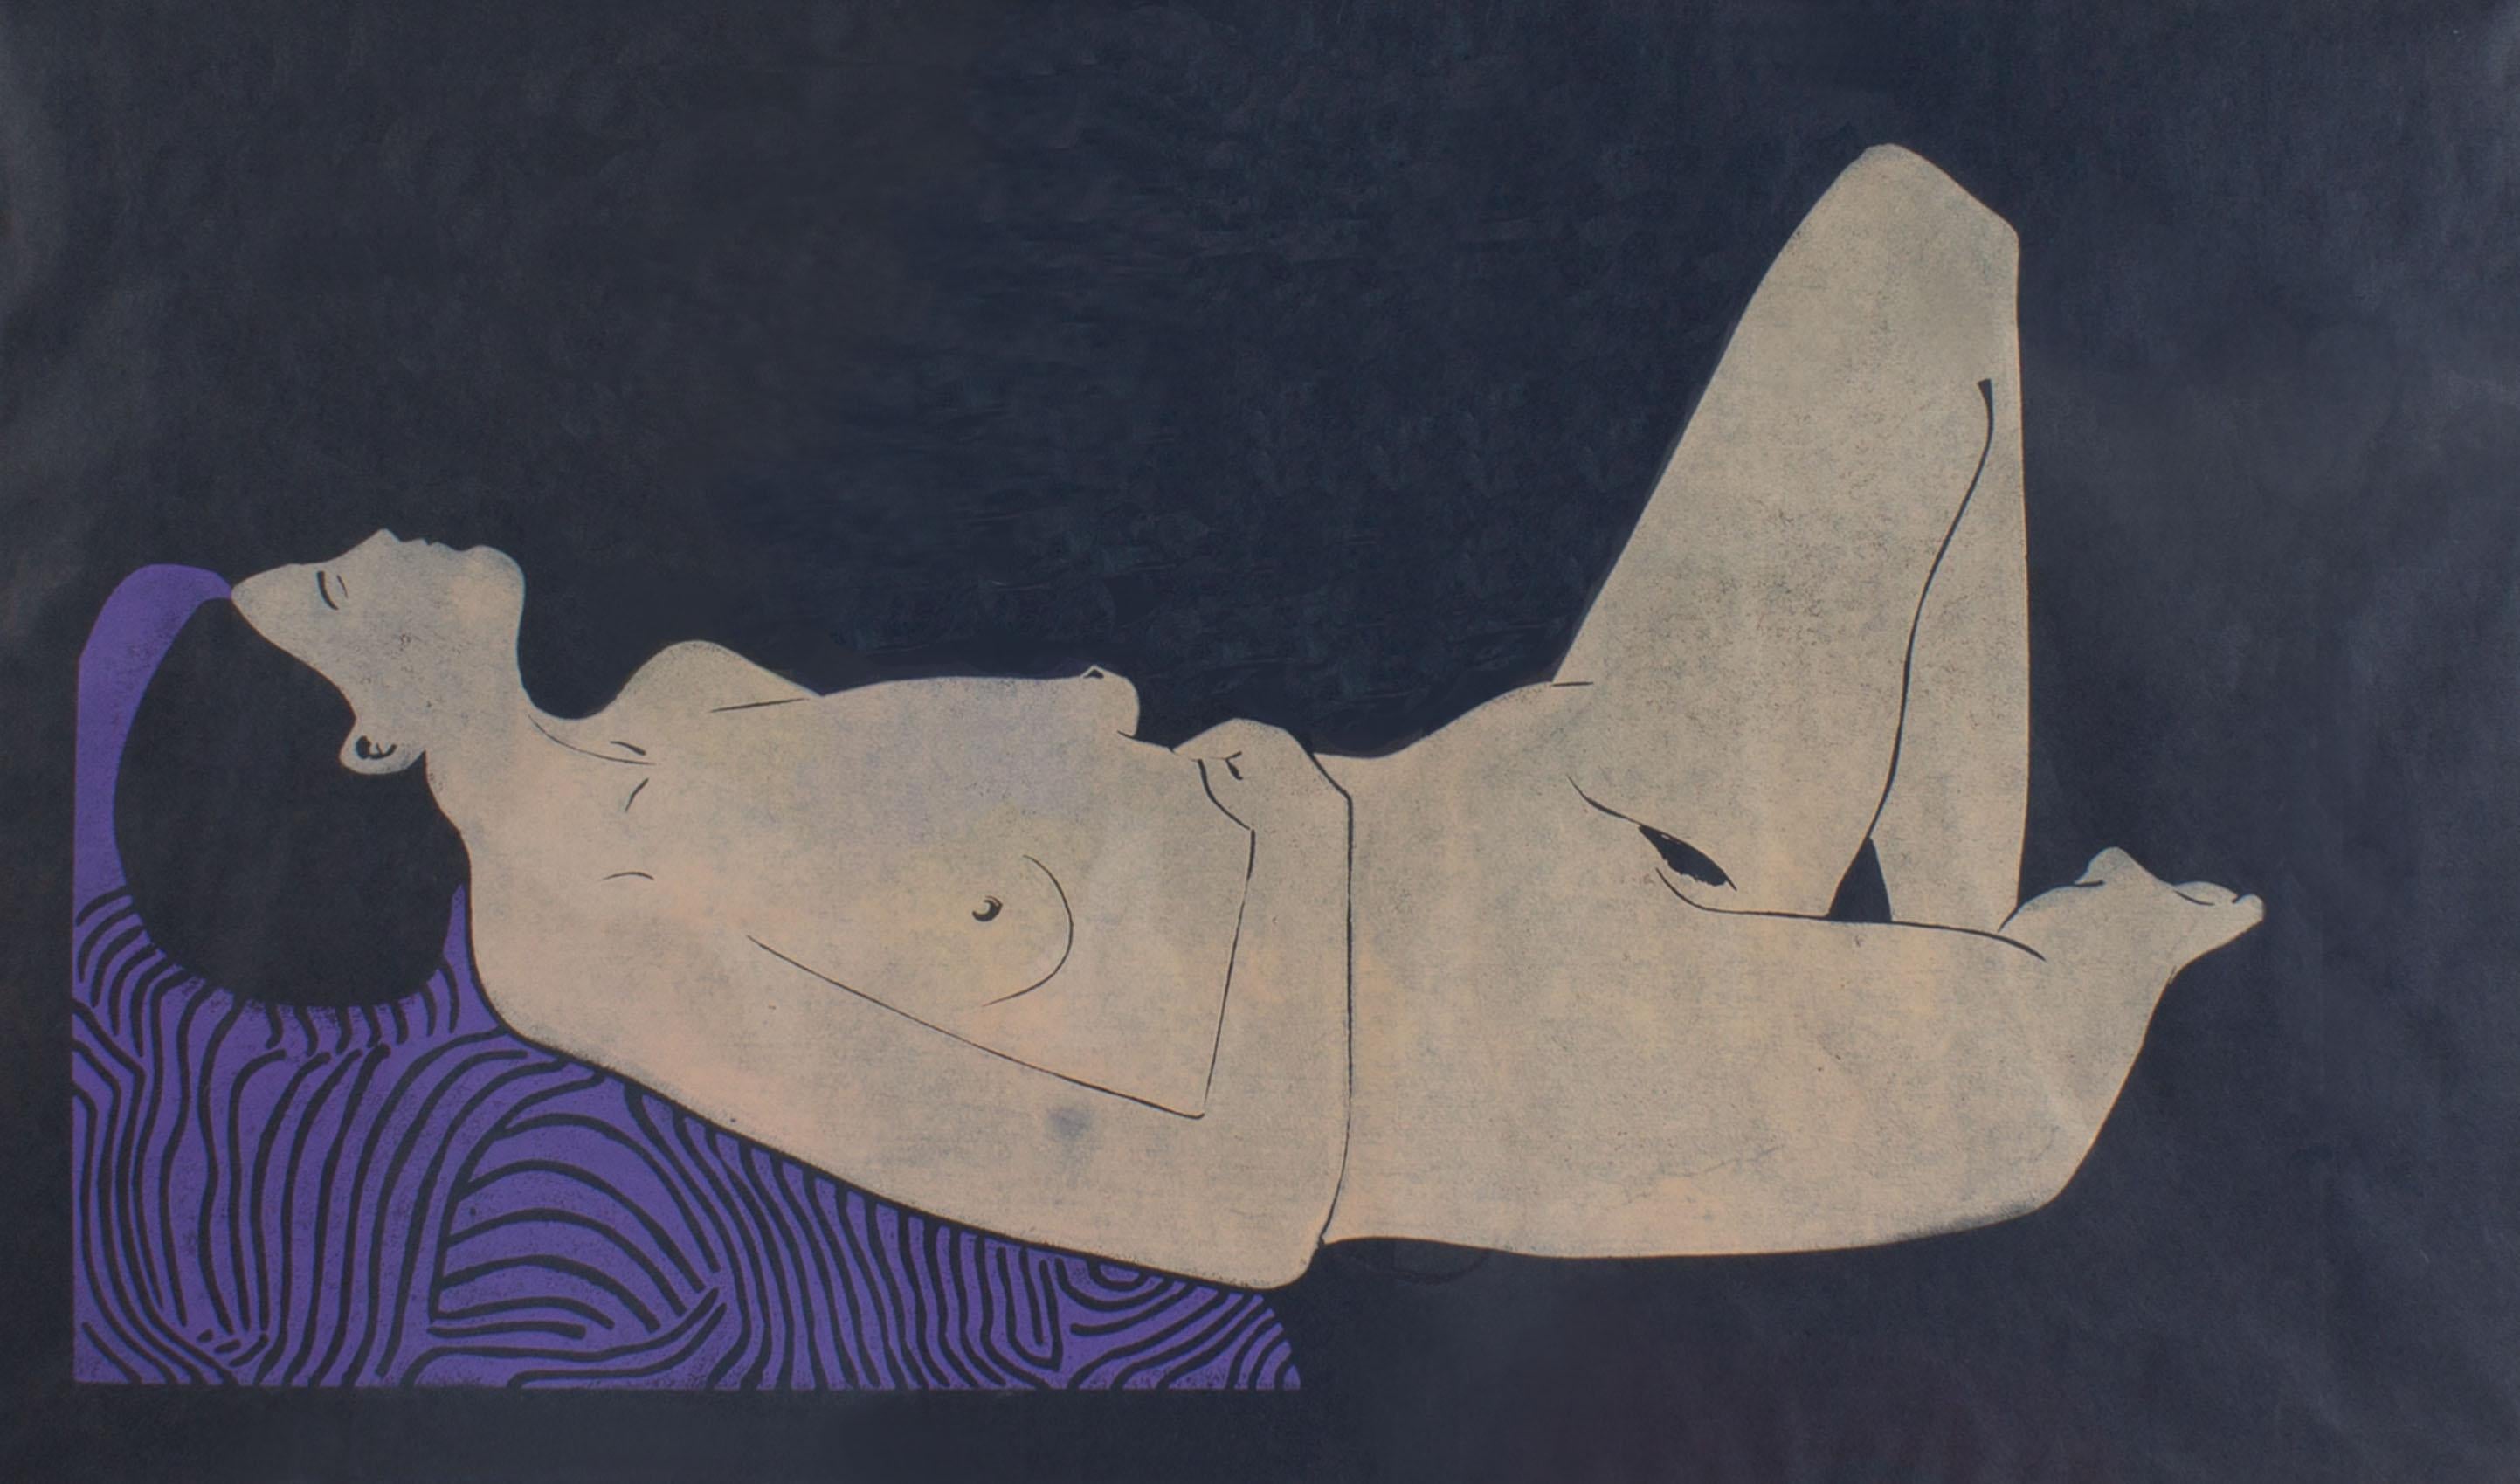 Gravure en relief en édition limitée intitulée Nude de l'artiste américain Doug Delind (né en 1947). Cette œuvre abstraite représente une femme nue allongée sur un fond marine foncé. Le personnage de la composition repose sur un coussin violet au